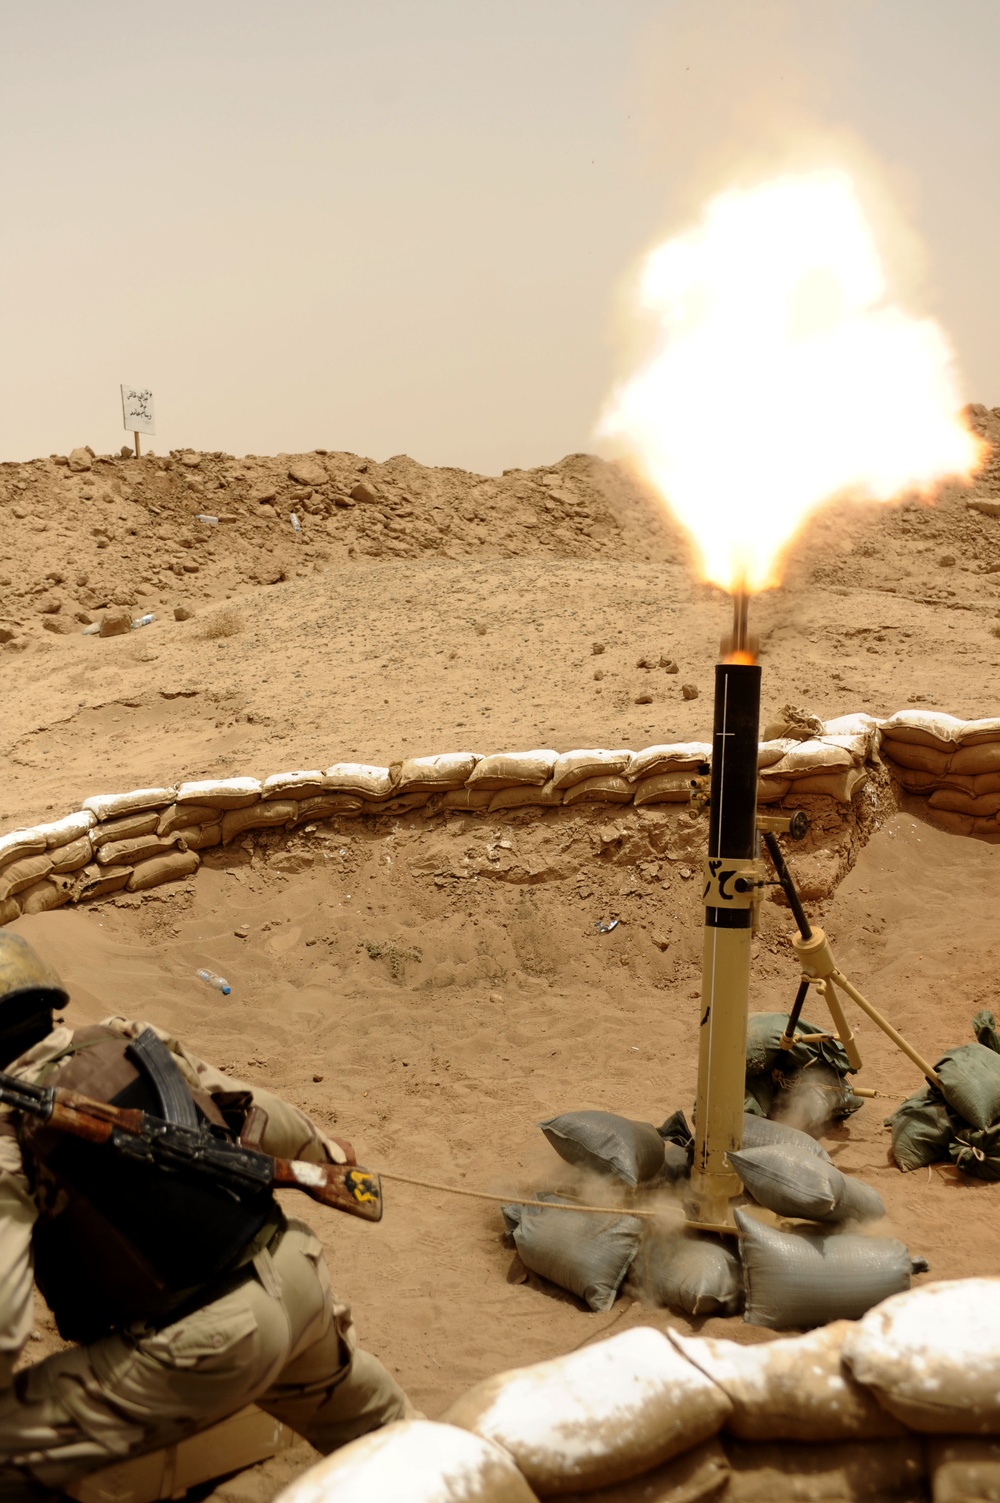 Mortar firing exercise